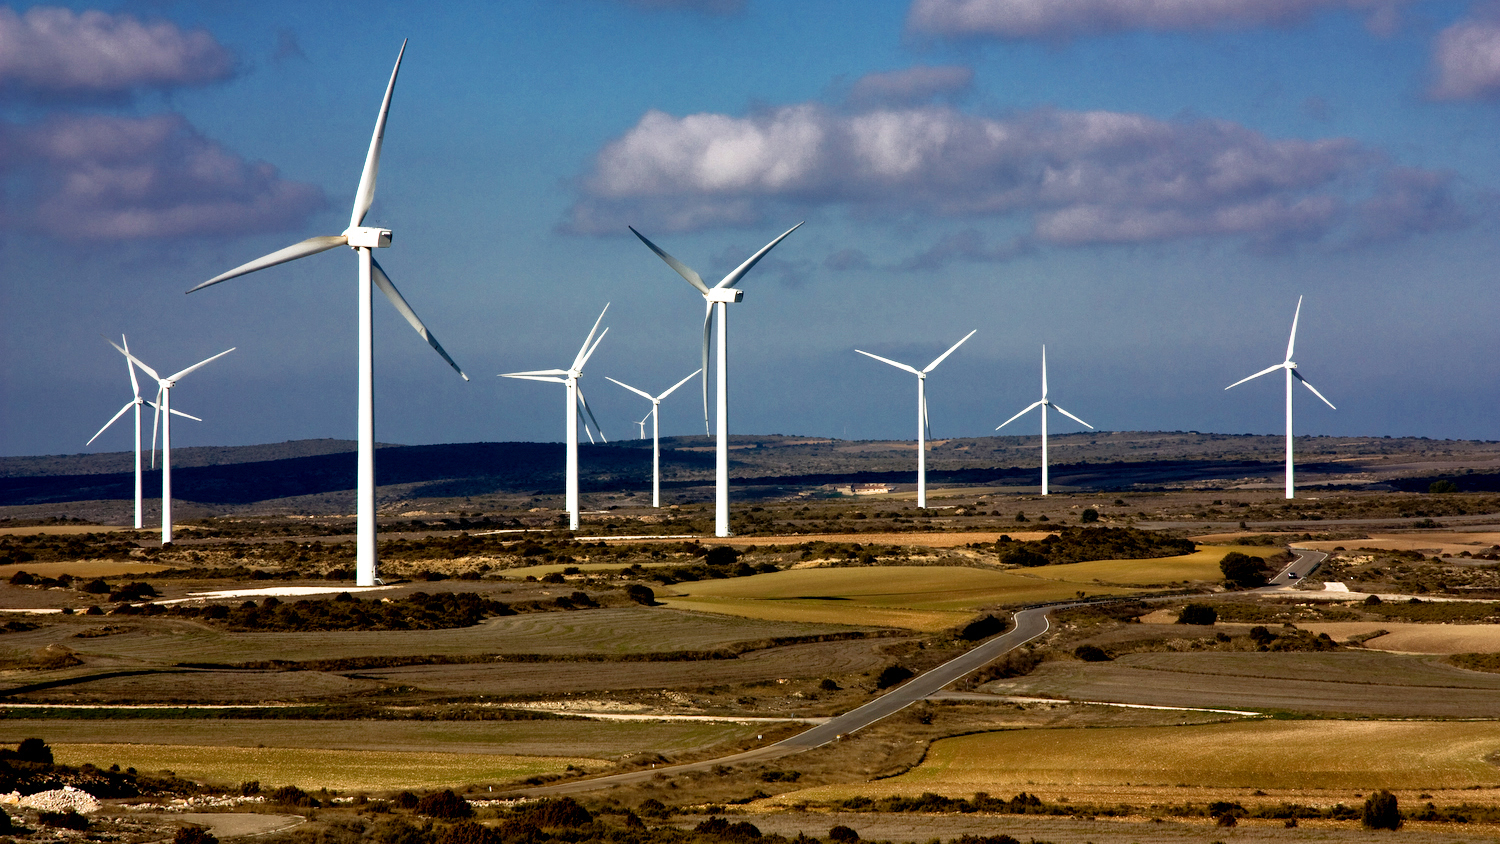 a field of wind turbines